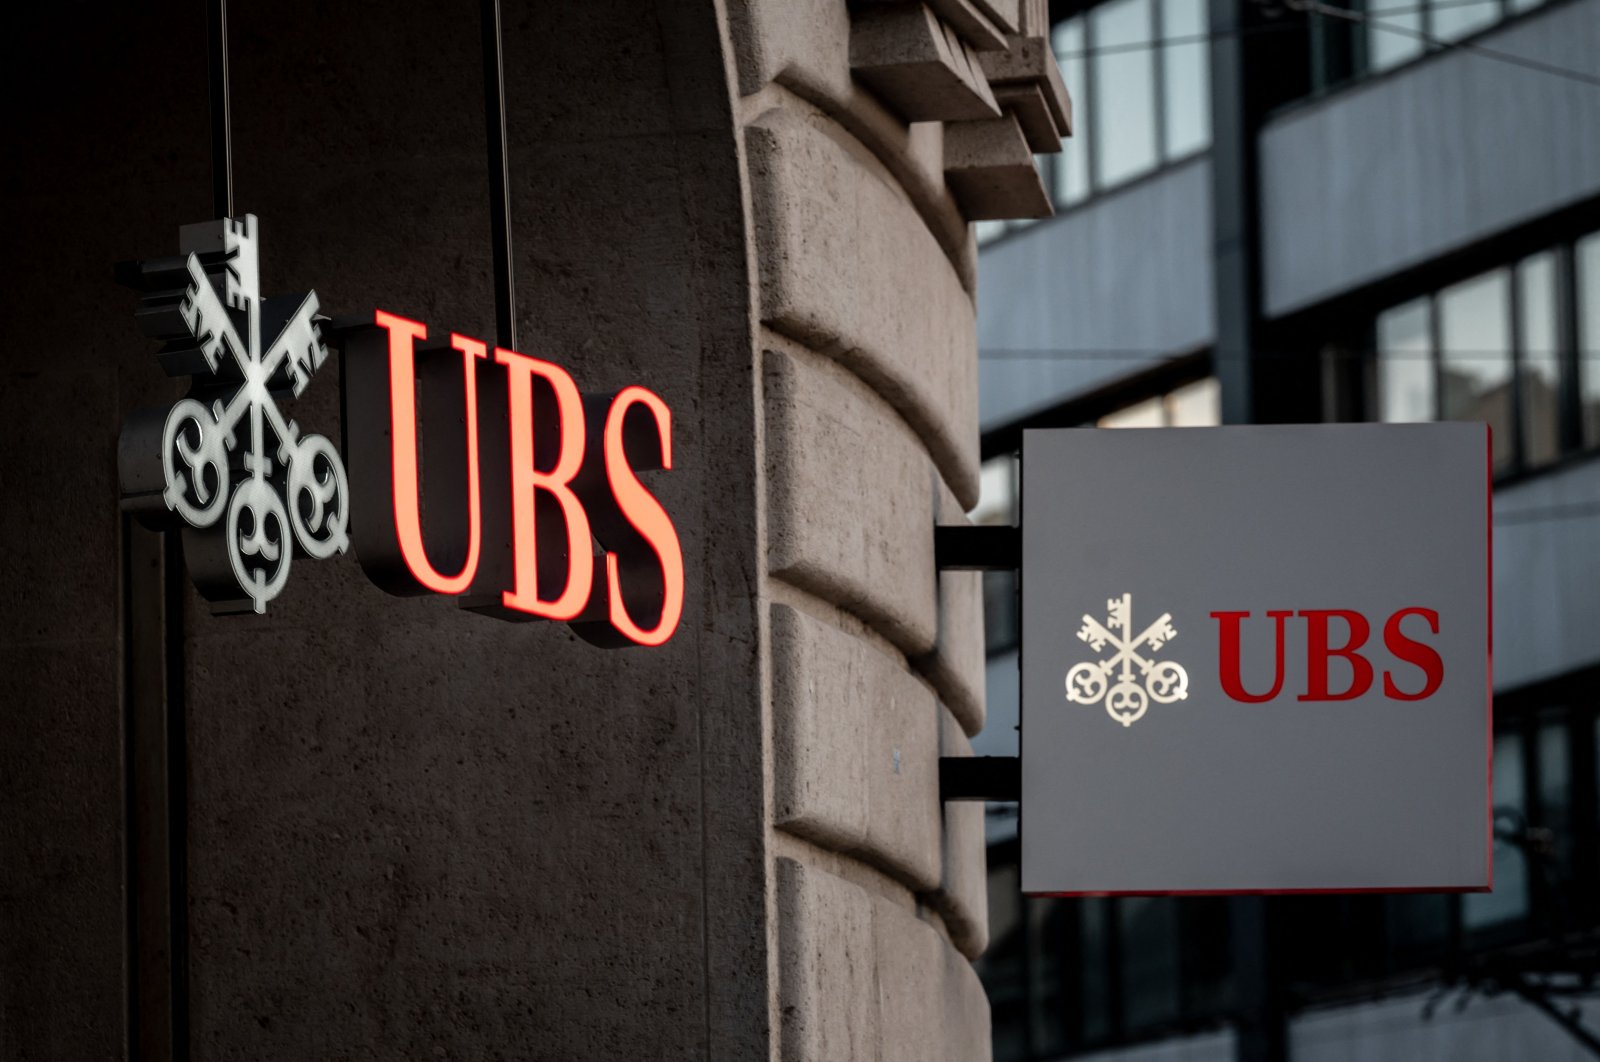 UBS setuju untuk membayar 8 juta atas kegagalan Archegos dari Credit Suisse